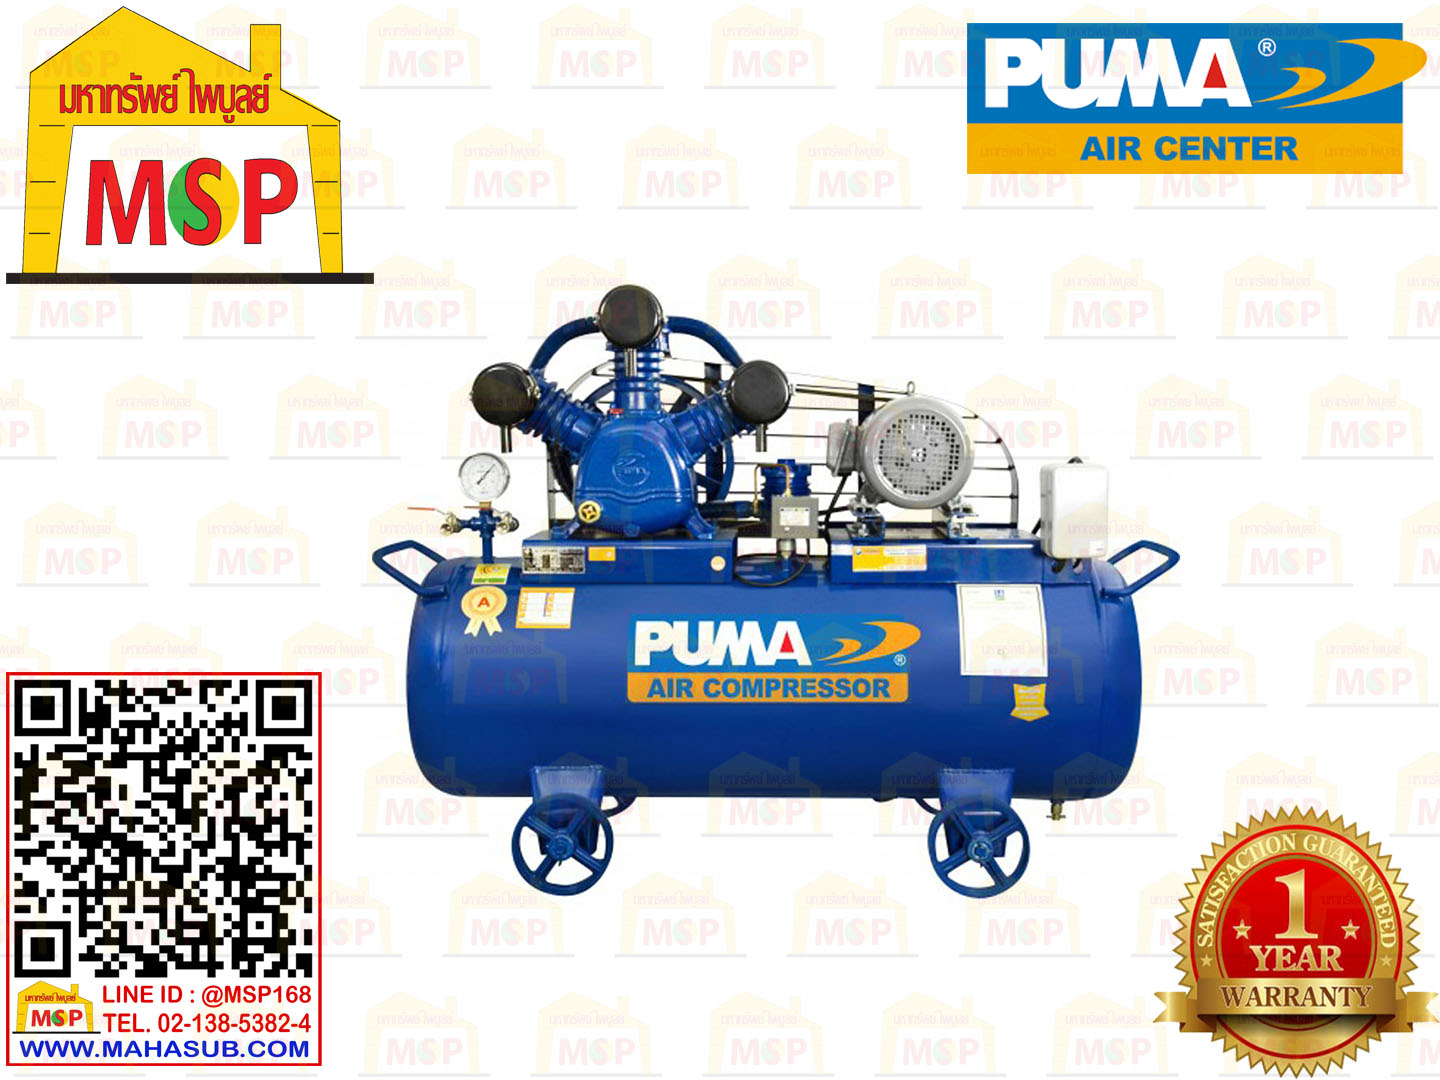 Puma ปั๊มลม PP23-PPM220V-MG 2สูบ 165L พร้อมมอเตอร์ Puma 3HP 220V